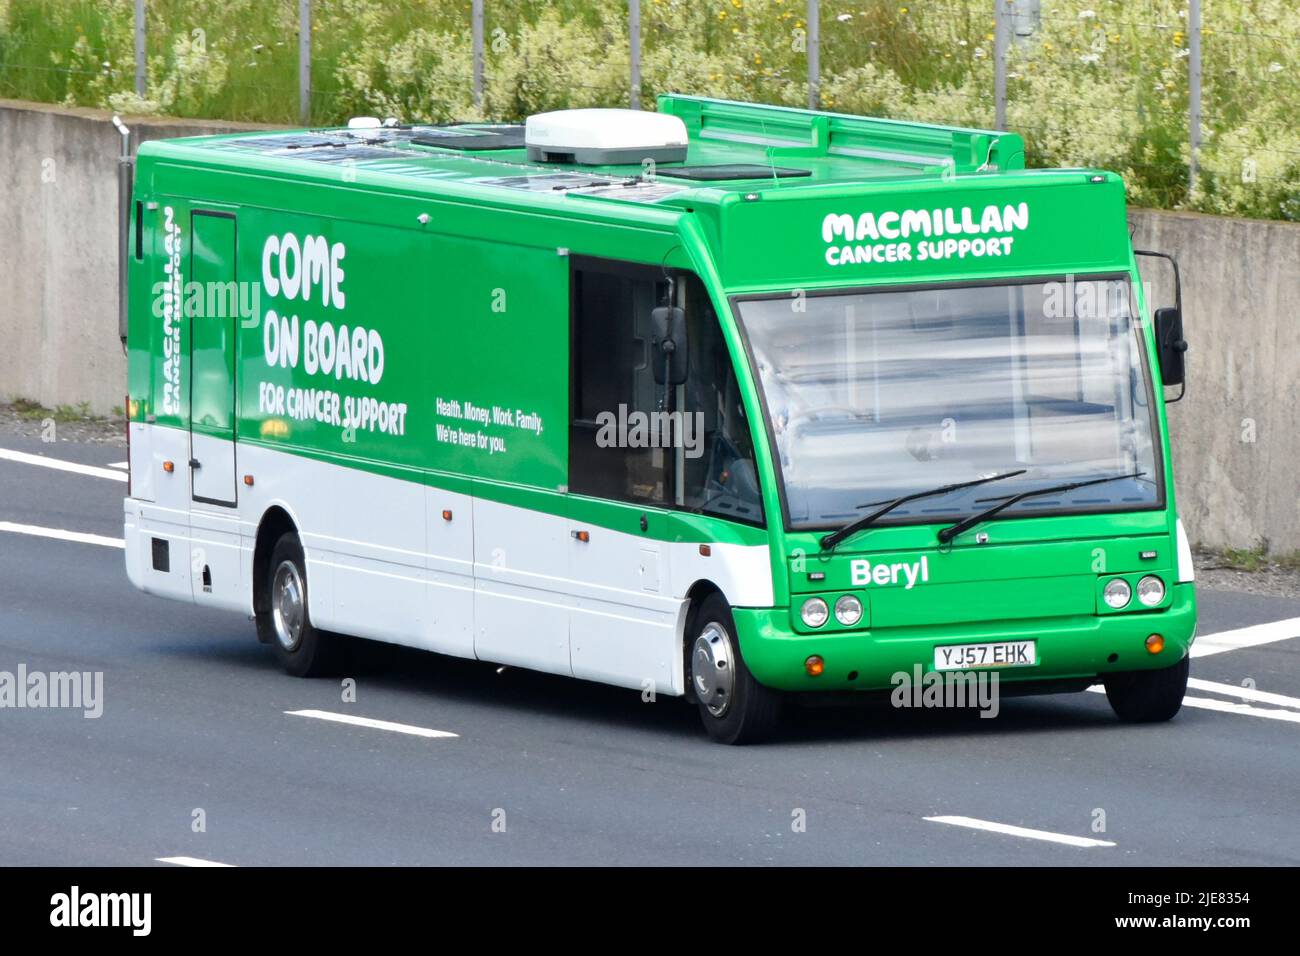 L'ente di beneficenza e il supporto del cancro Macmillan da un mobile viaggio 'come on Board' aiutano l'autobus di esposizione nel marchio guida verde sulla strada autostradale del Regno Unito Foto Stock